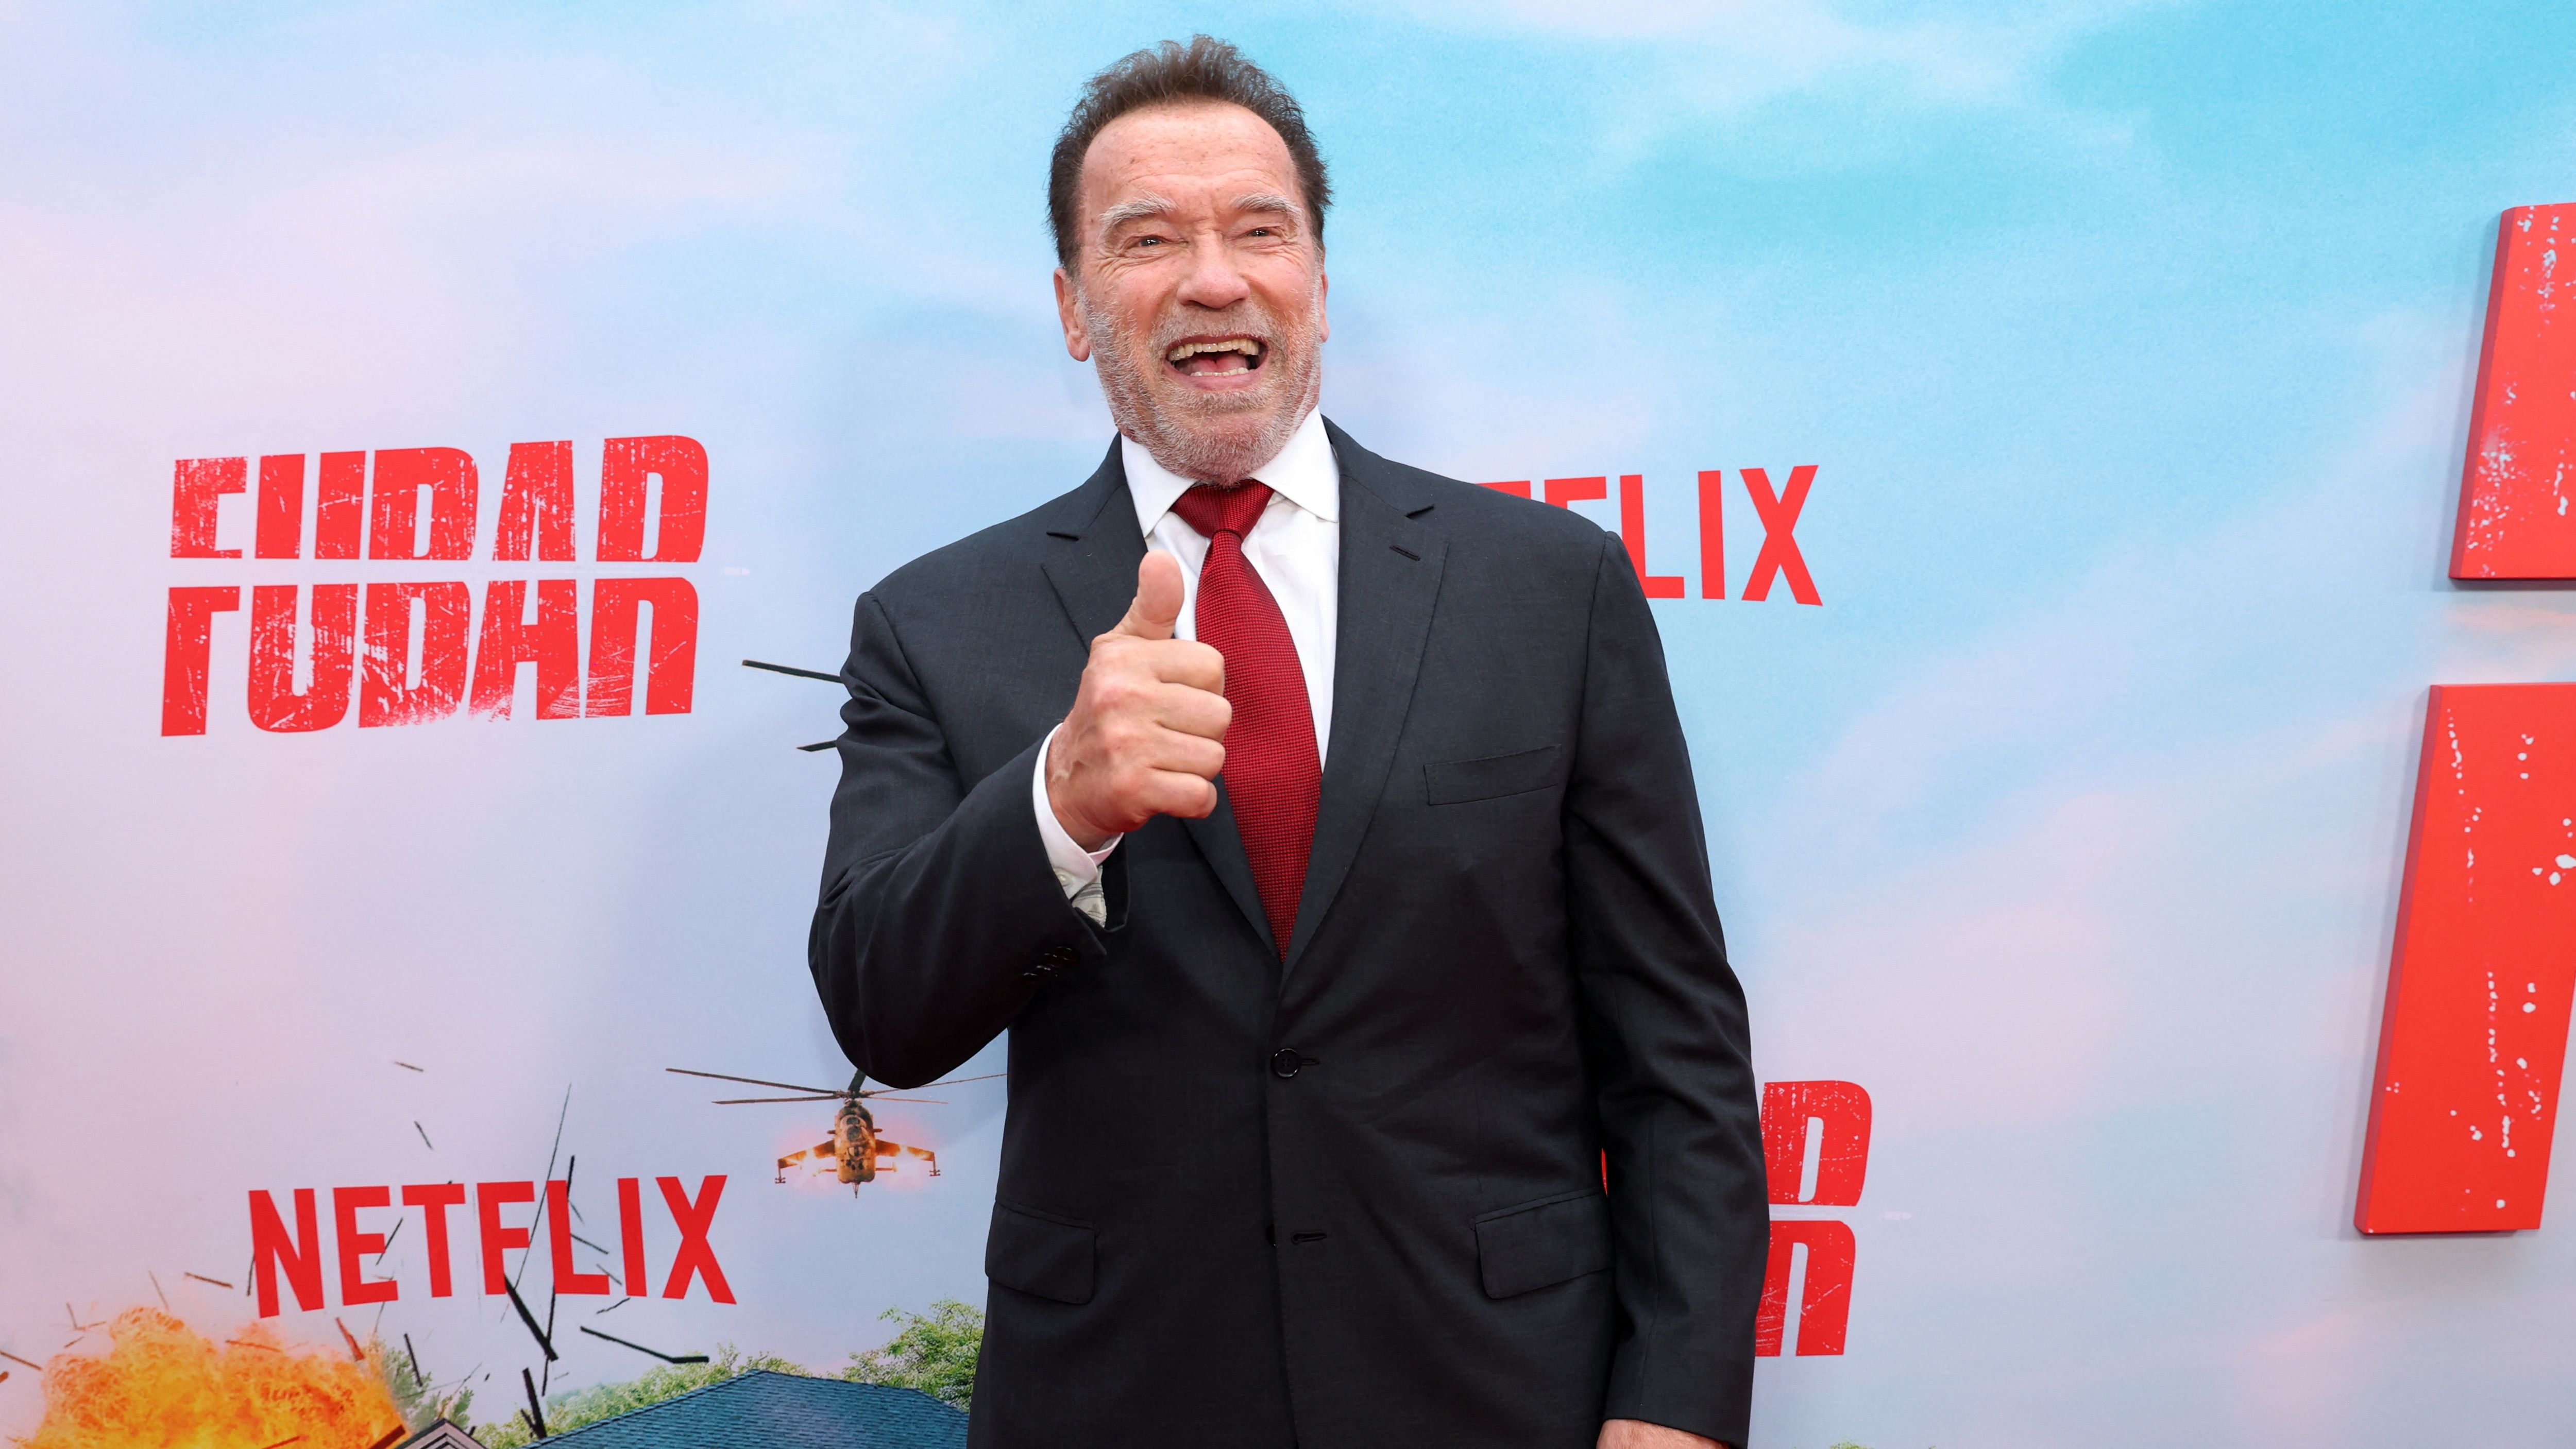 El actor Arnold Schwarzenegger agradeció al público colombiano por posicionar la serie Fubar (protagonizada por él) como la serie más vista en Colombia (Reuters)